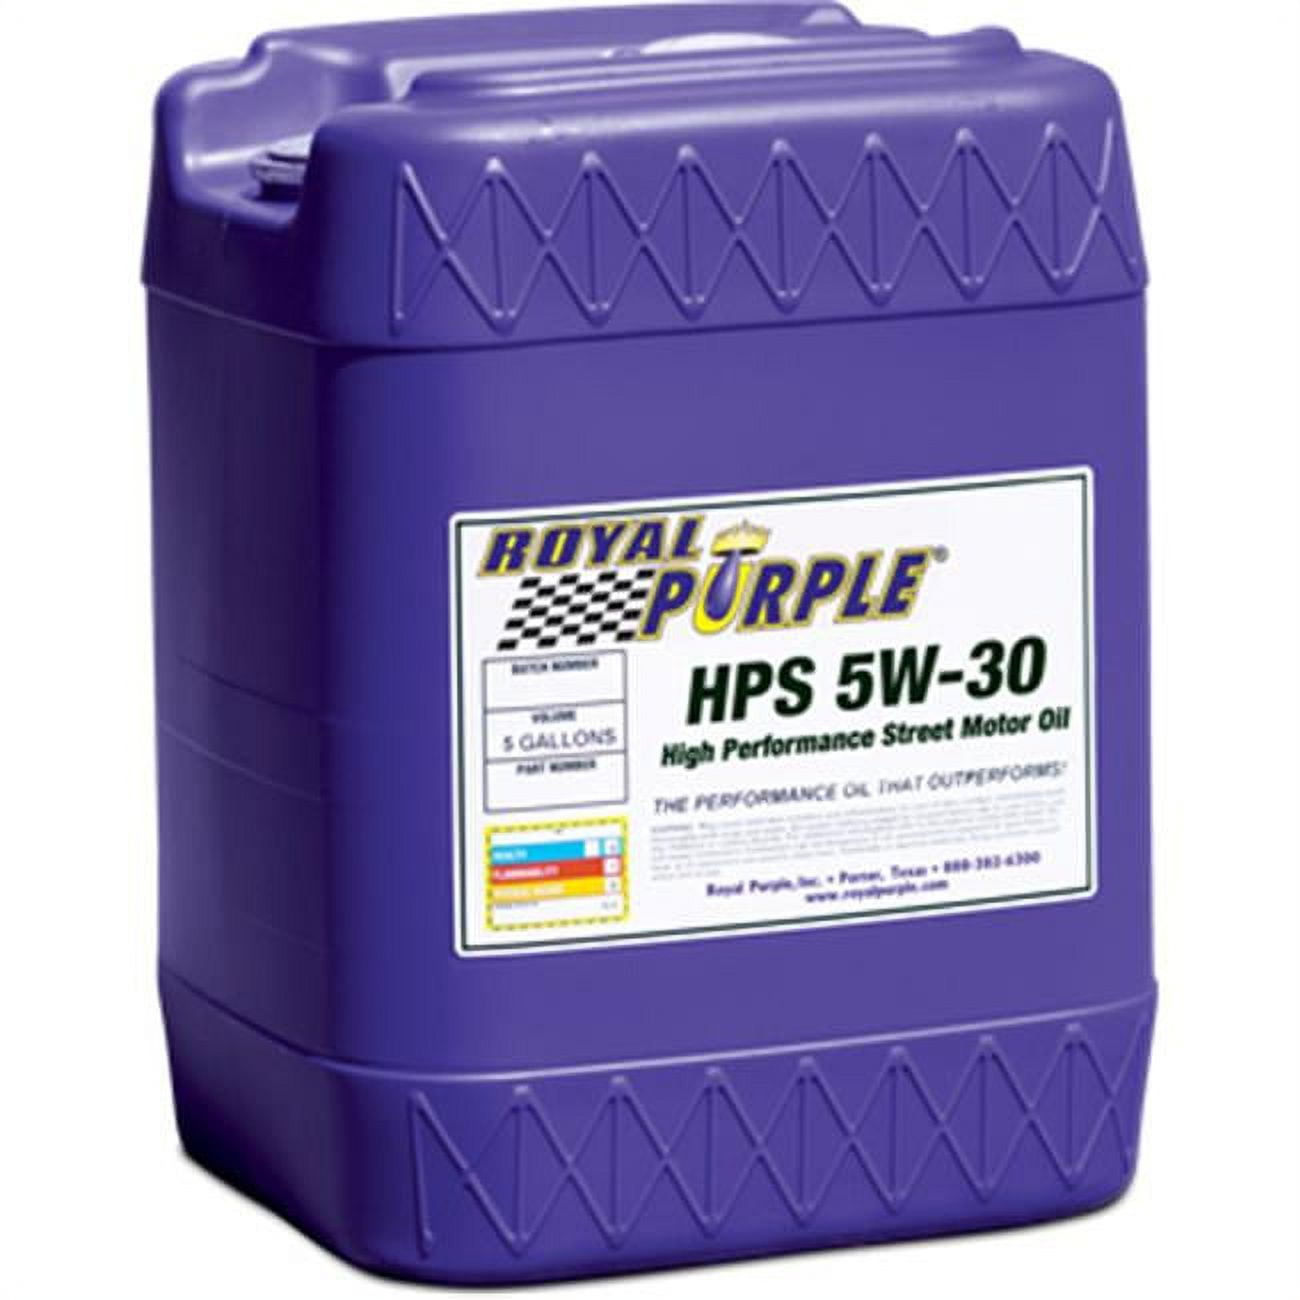 Royal Purple HPS 5W30 Motor Oil 5 gal P/N 35530 